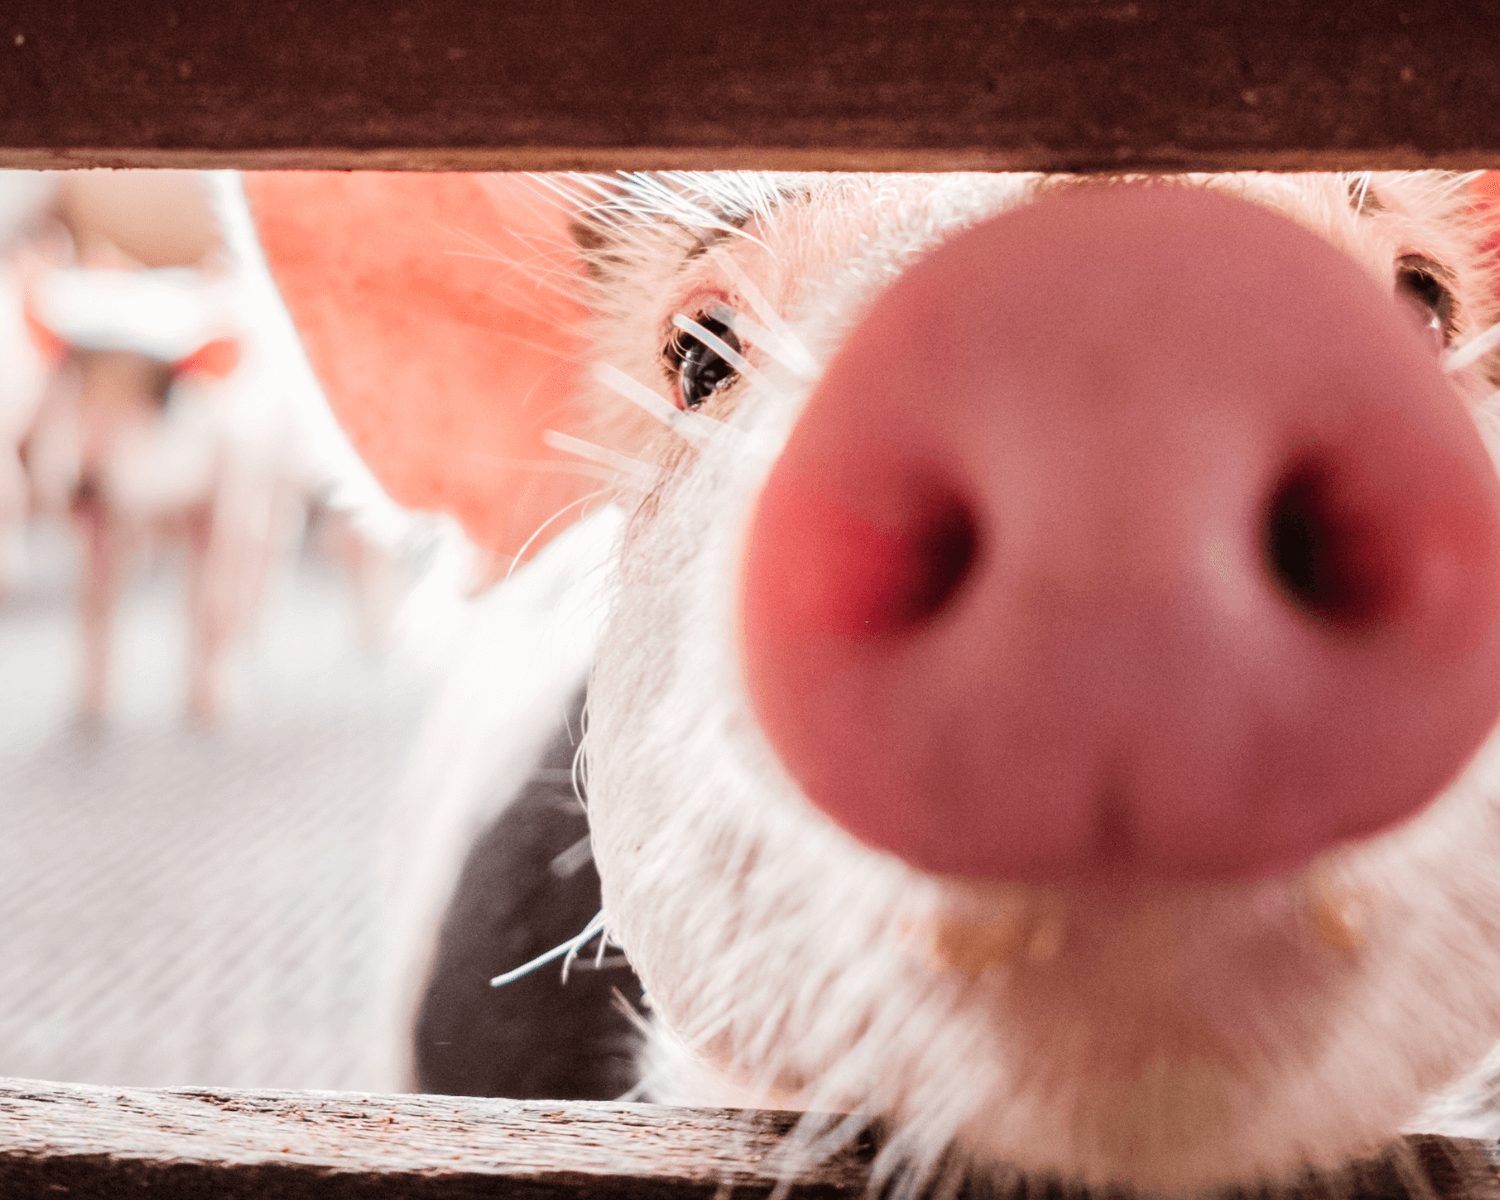 Novas plantas brasileiras de carne suína são habilitadas no Canadá